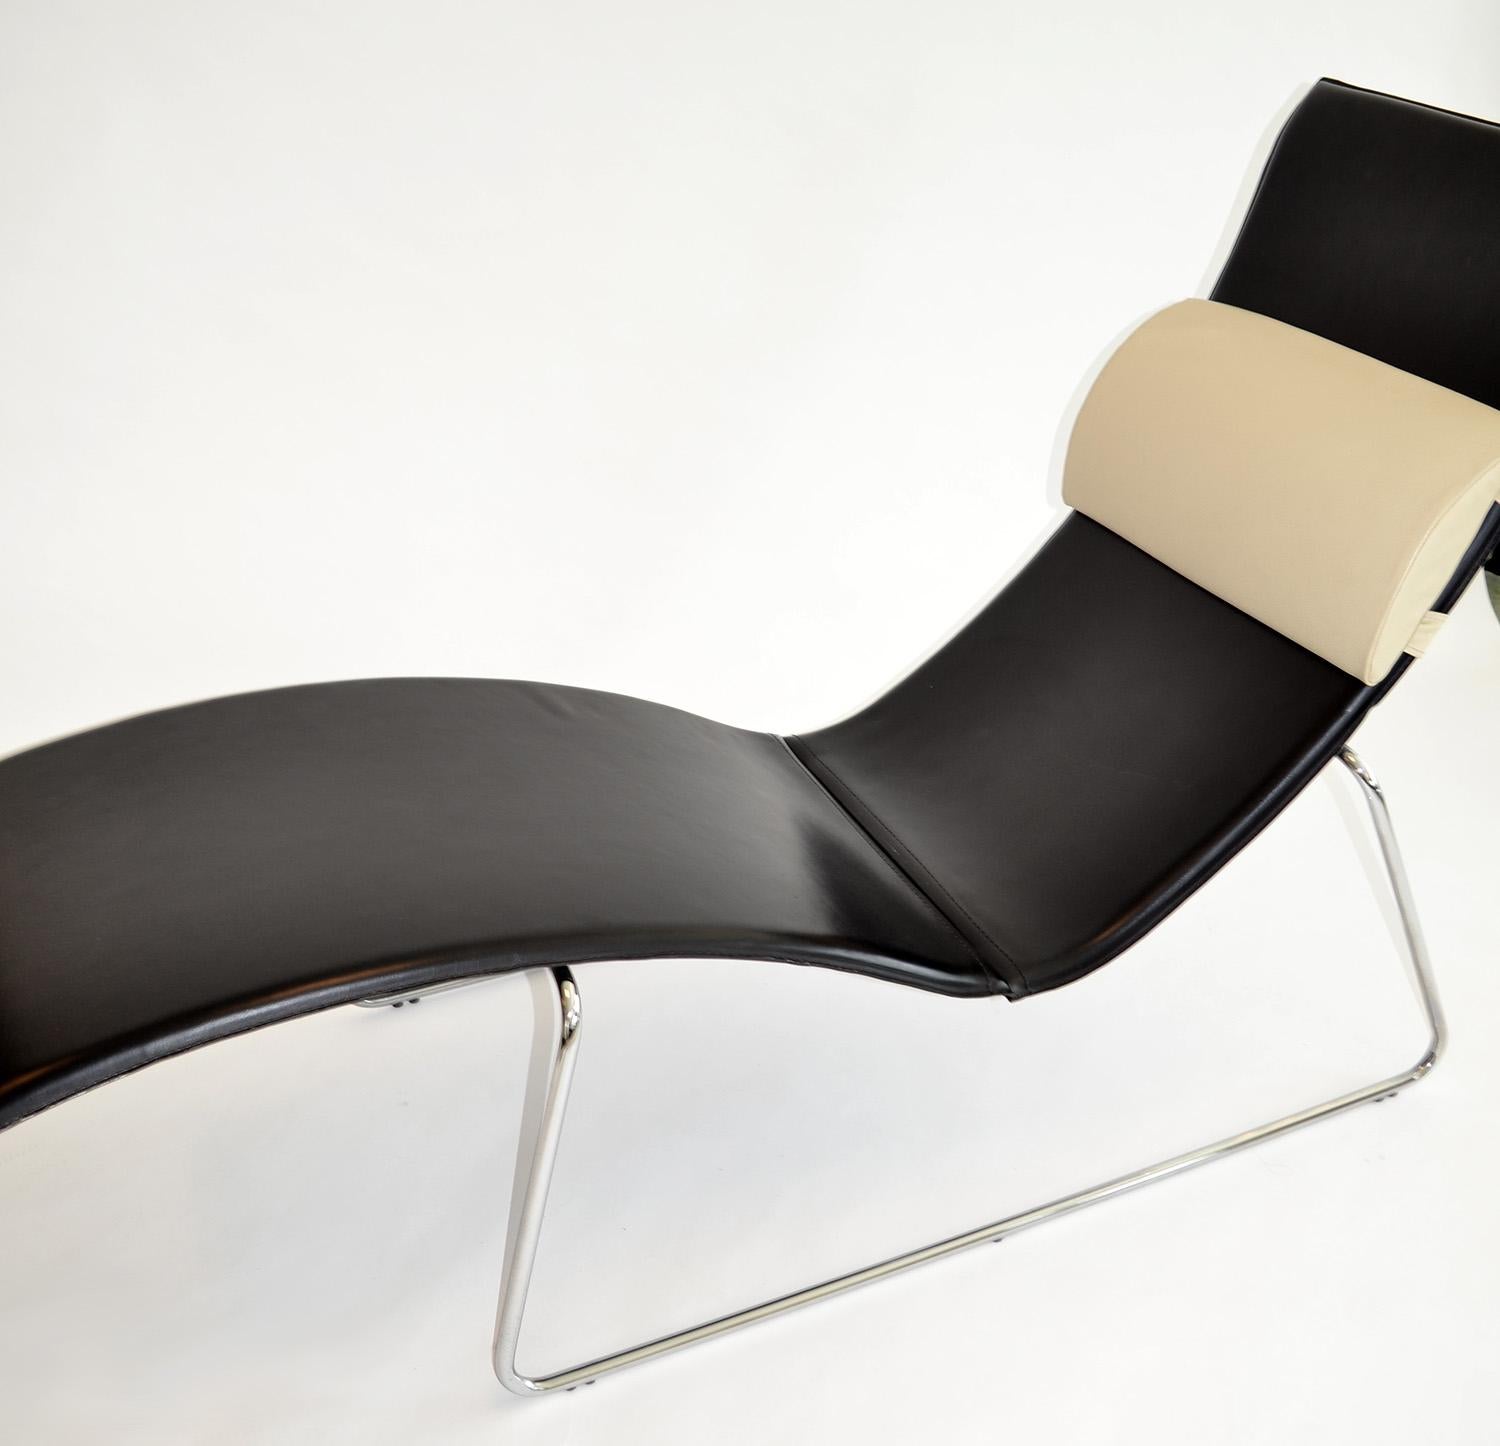 Fin du 20e siècle Chaise Longue ou Lounge Chair en cuir noir sur base en acier 1990's Italie en vente